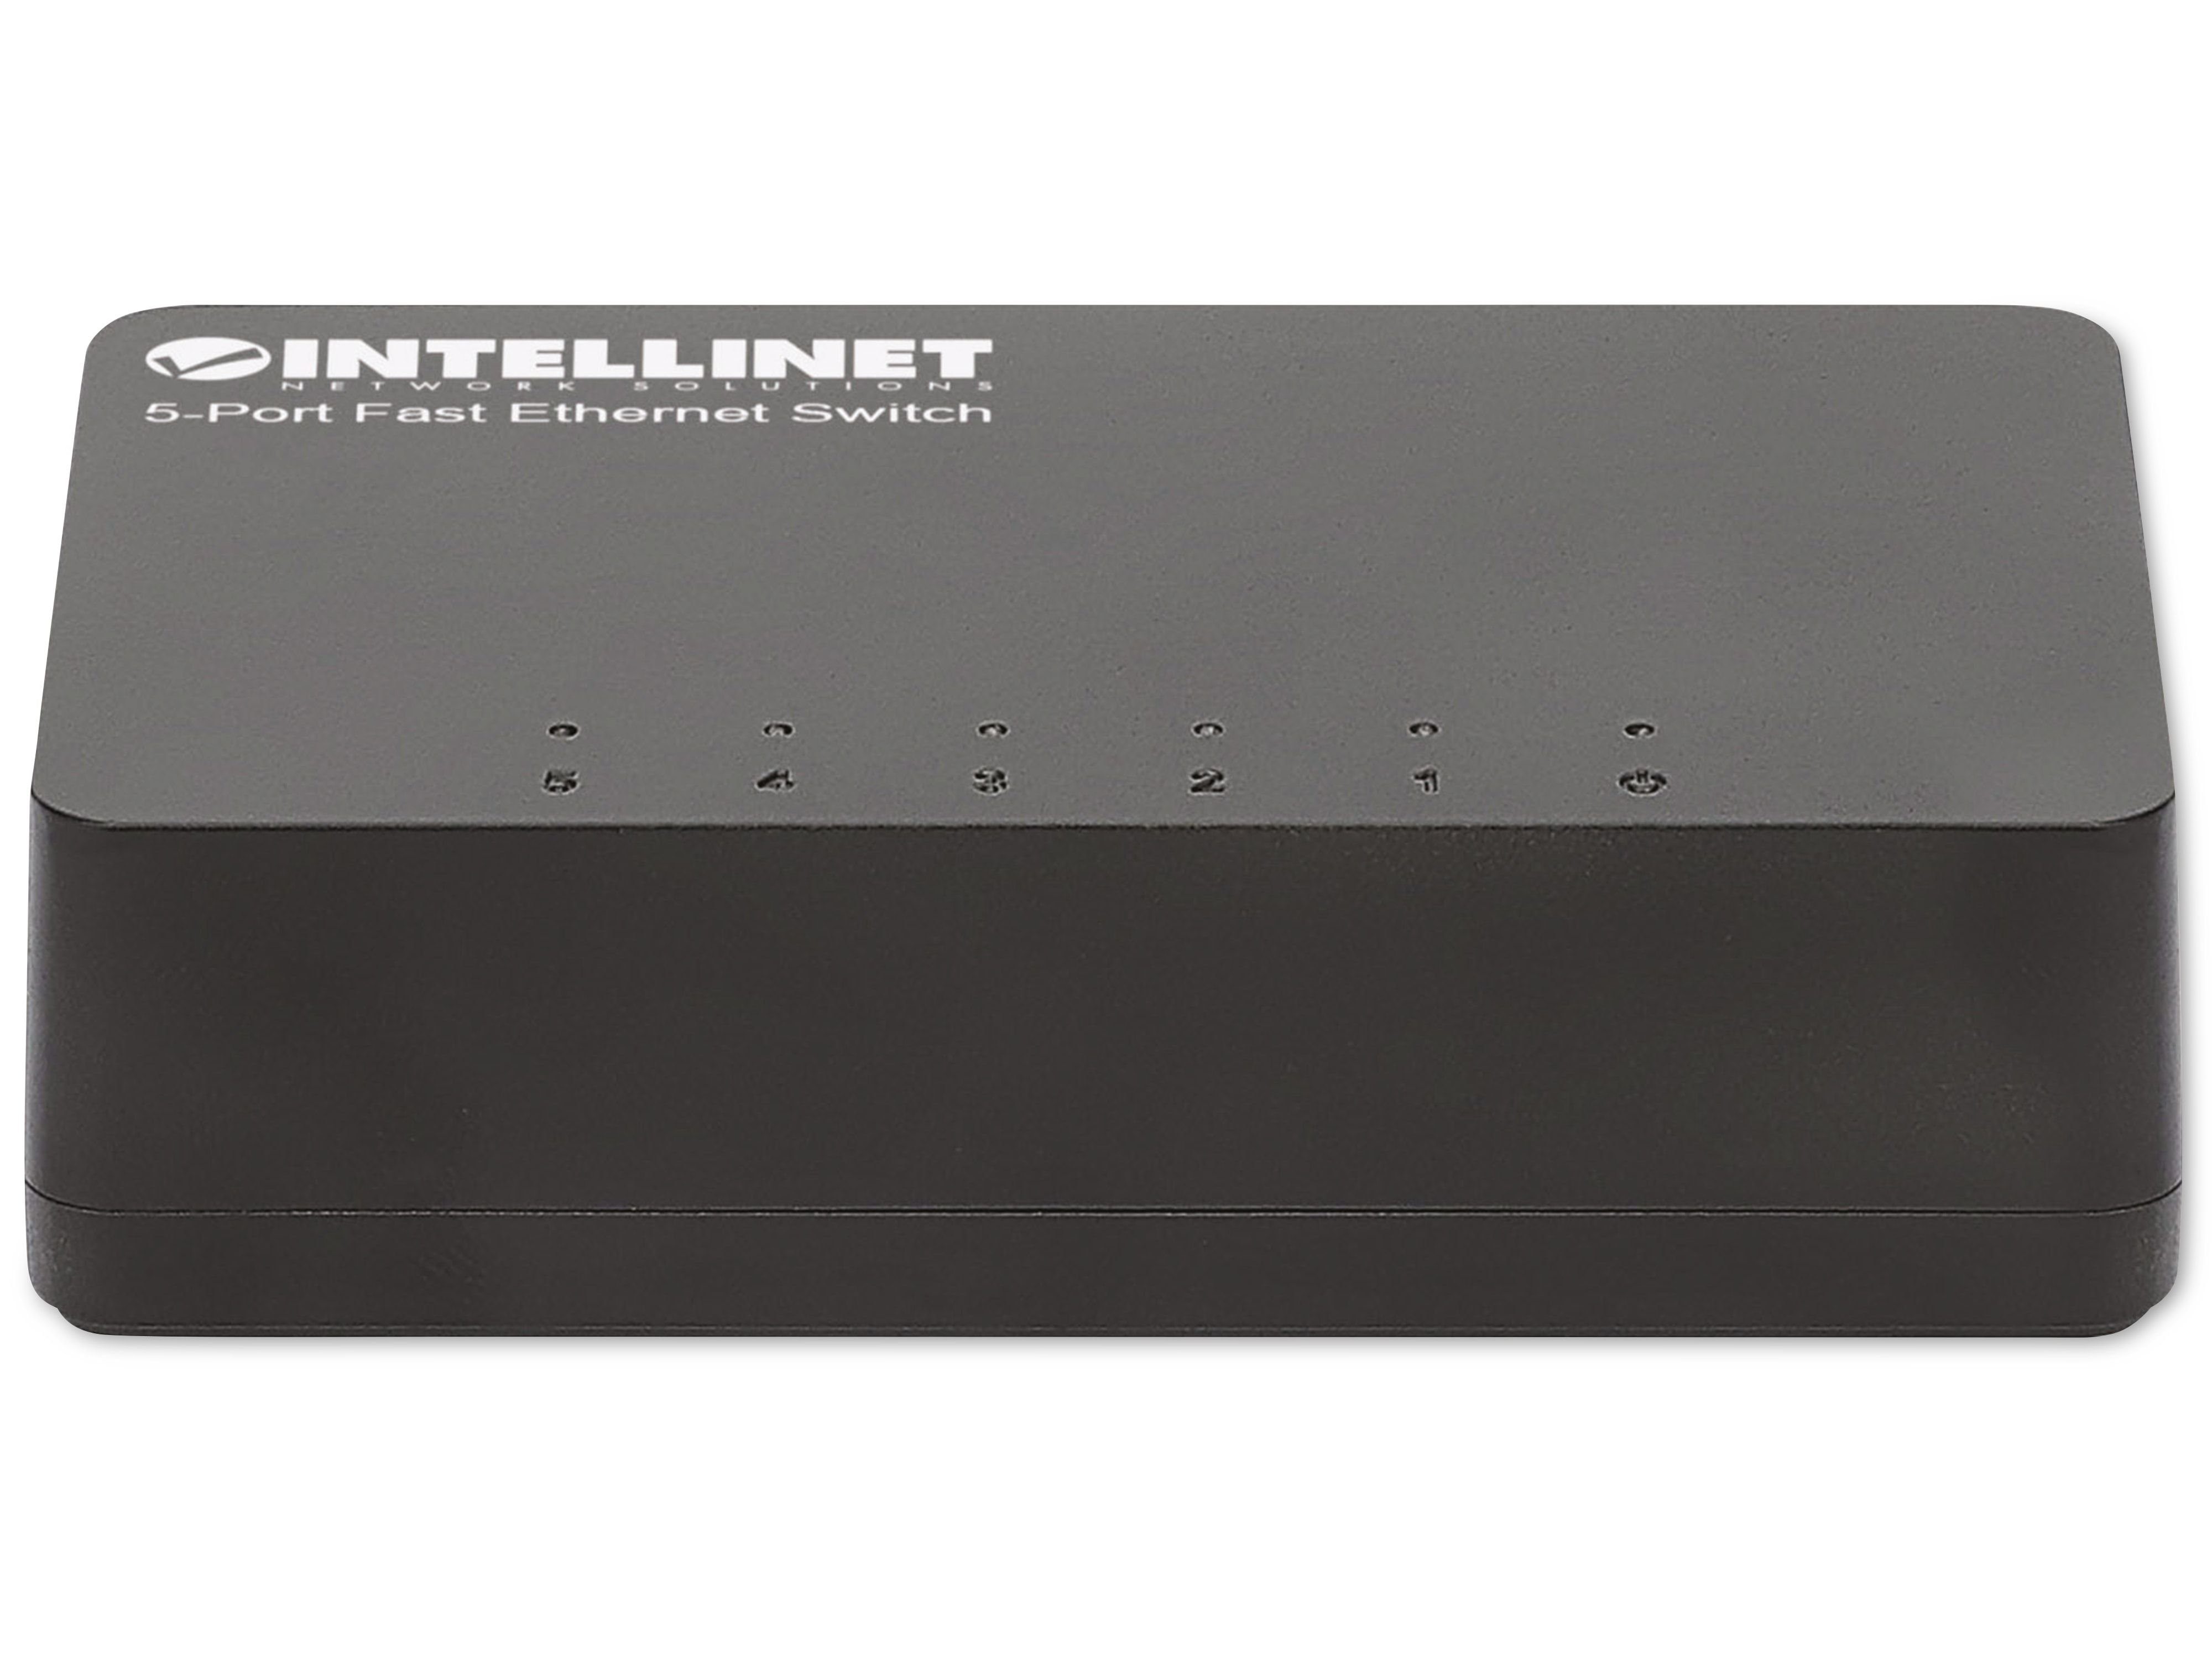 Netzwerk-Switch schwarz INTELLINET Intellinet 561723 5-Port, Switch Ethernet